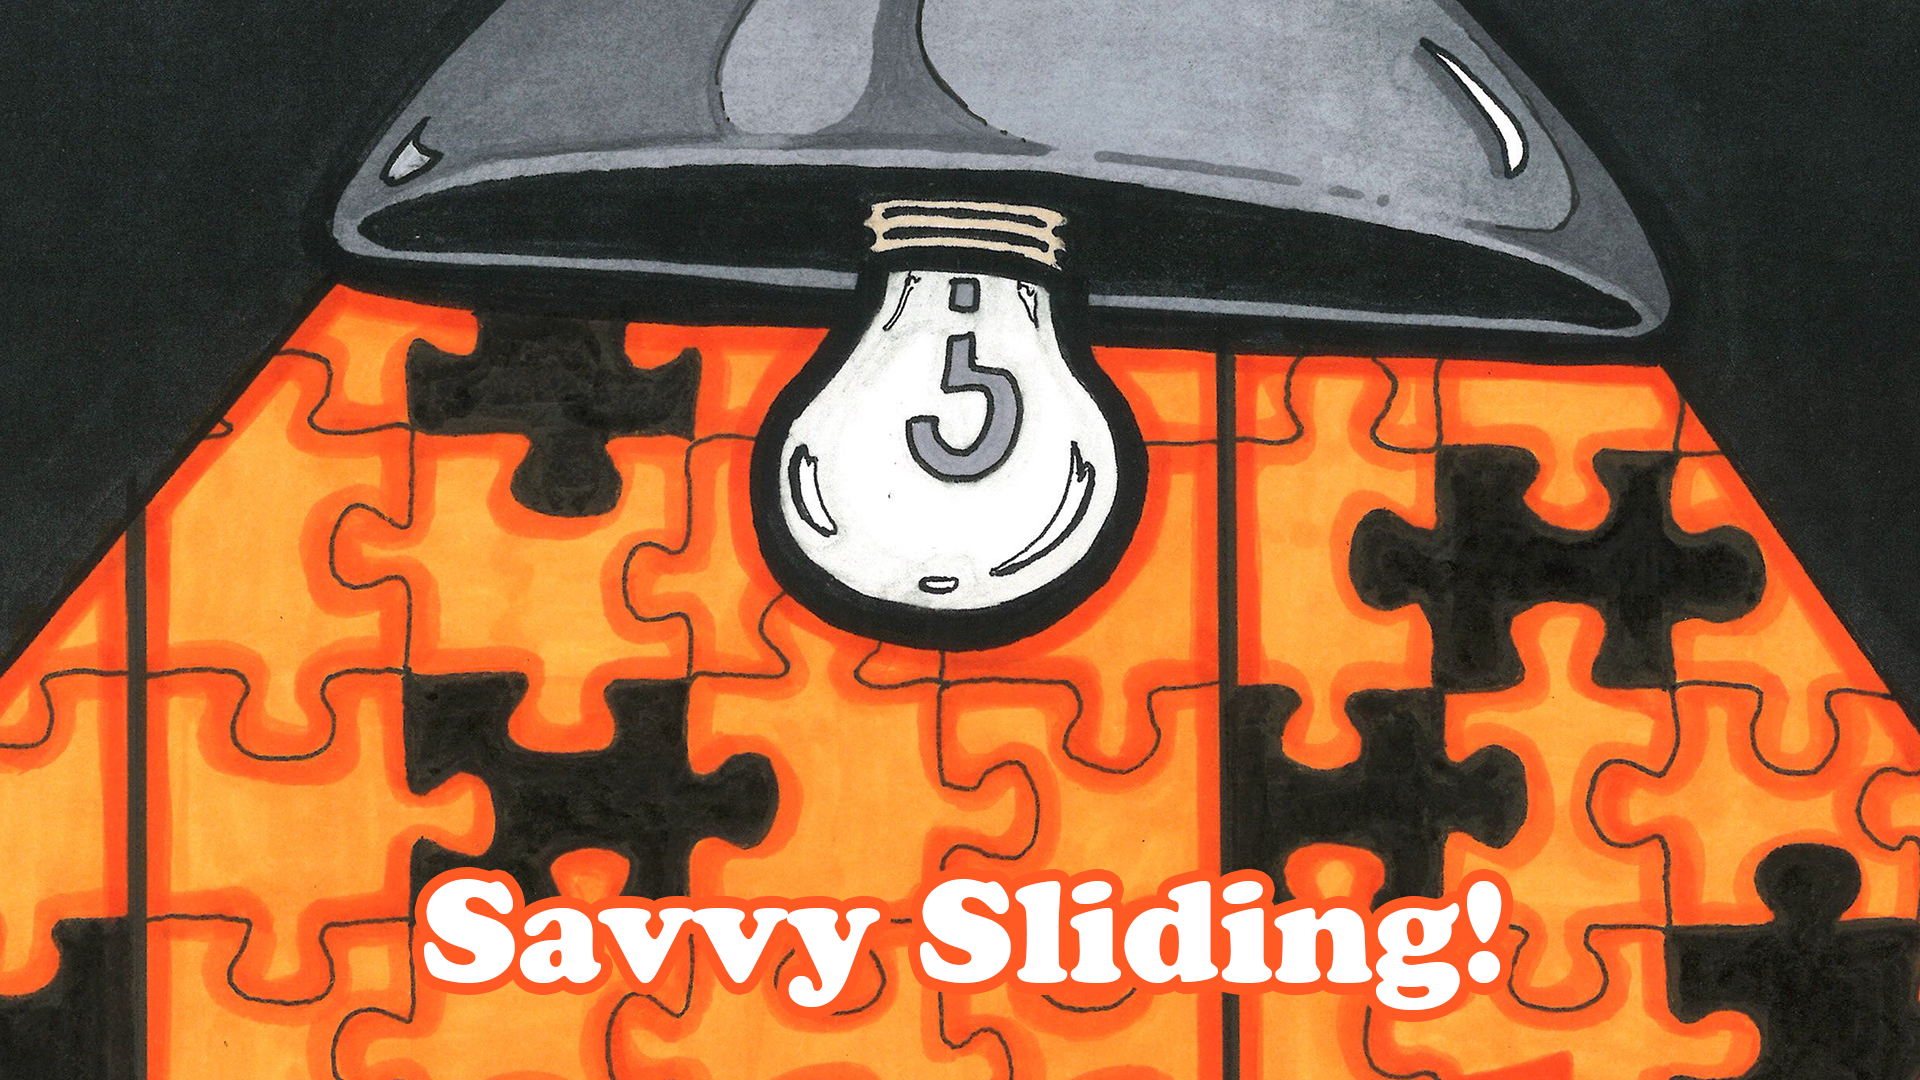 Savvy Sliding!